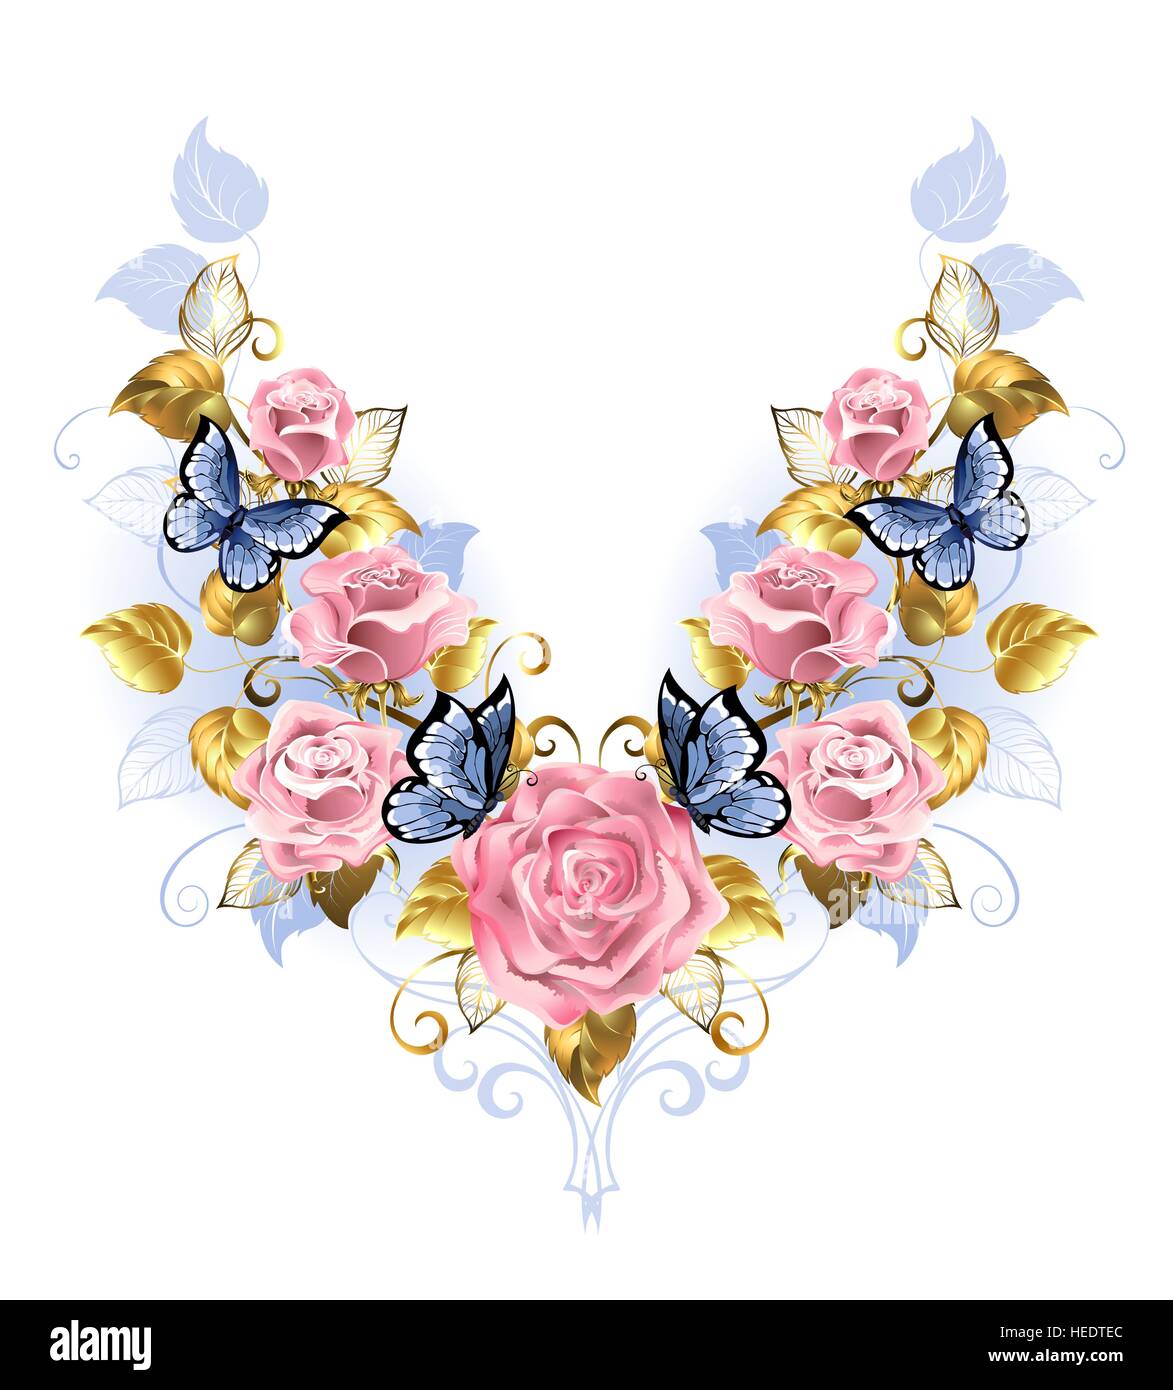 Motif symétrique de roses roses, papillon bleu, bleu et feuille d'or sur un fond blanc. Conception avec roses. Rose rose. Couleurs tendance. Quartz Rose Illustration de Vecteur